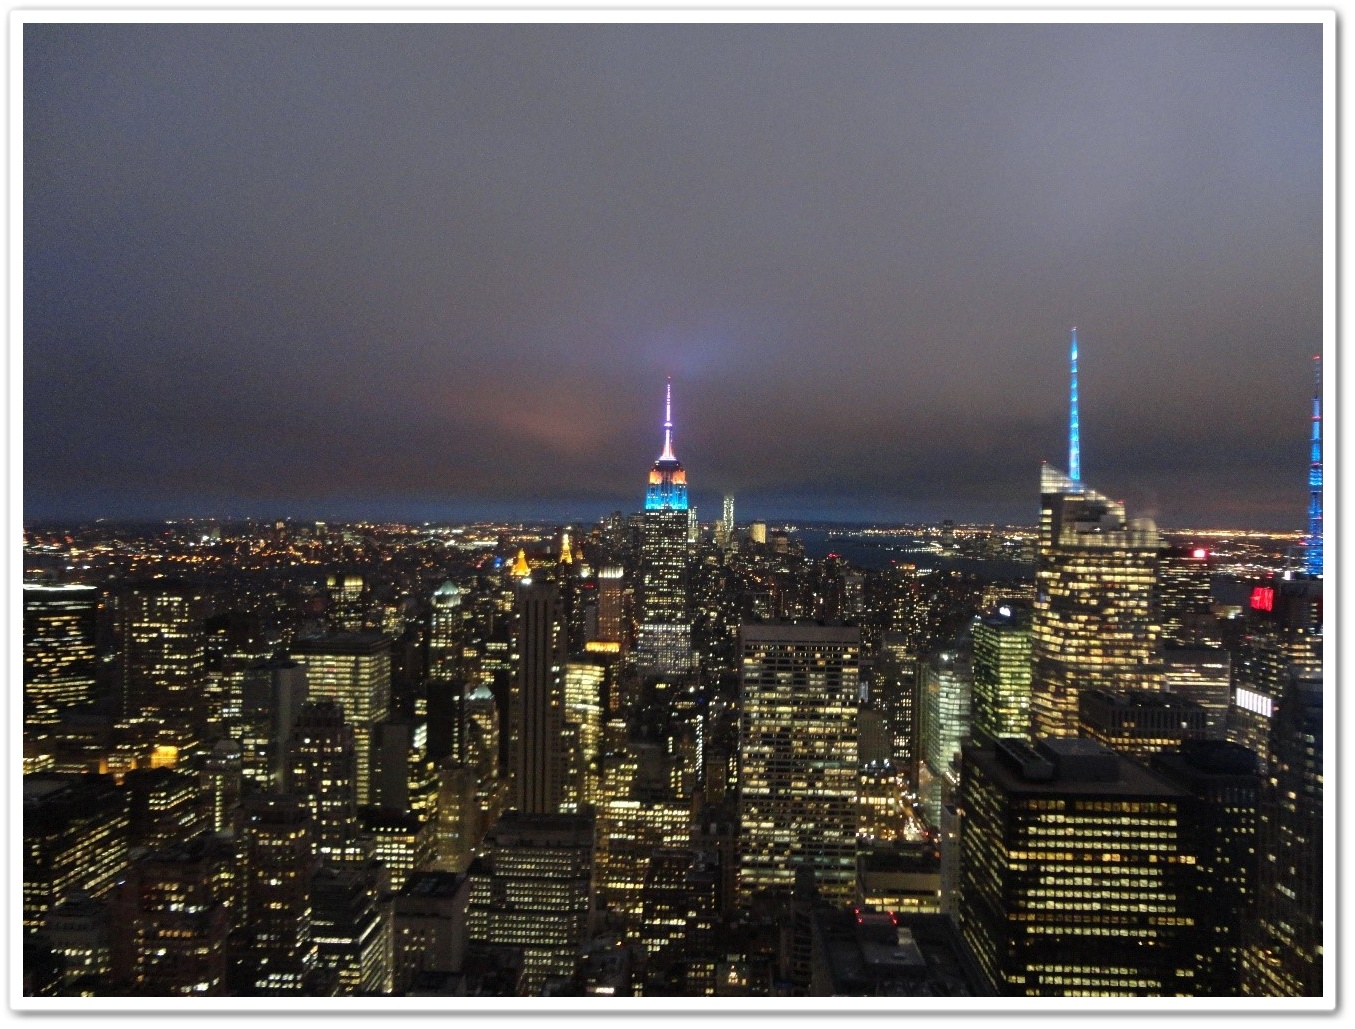 ロックフェラーセンタービルから見たニューヨークの夜景